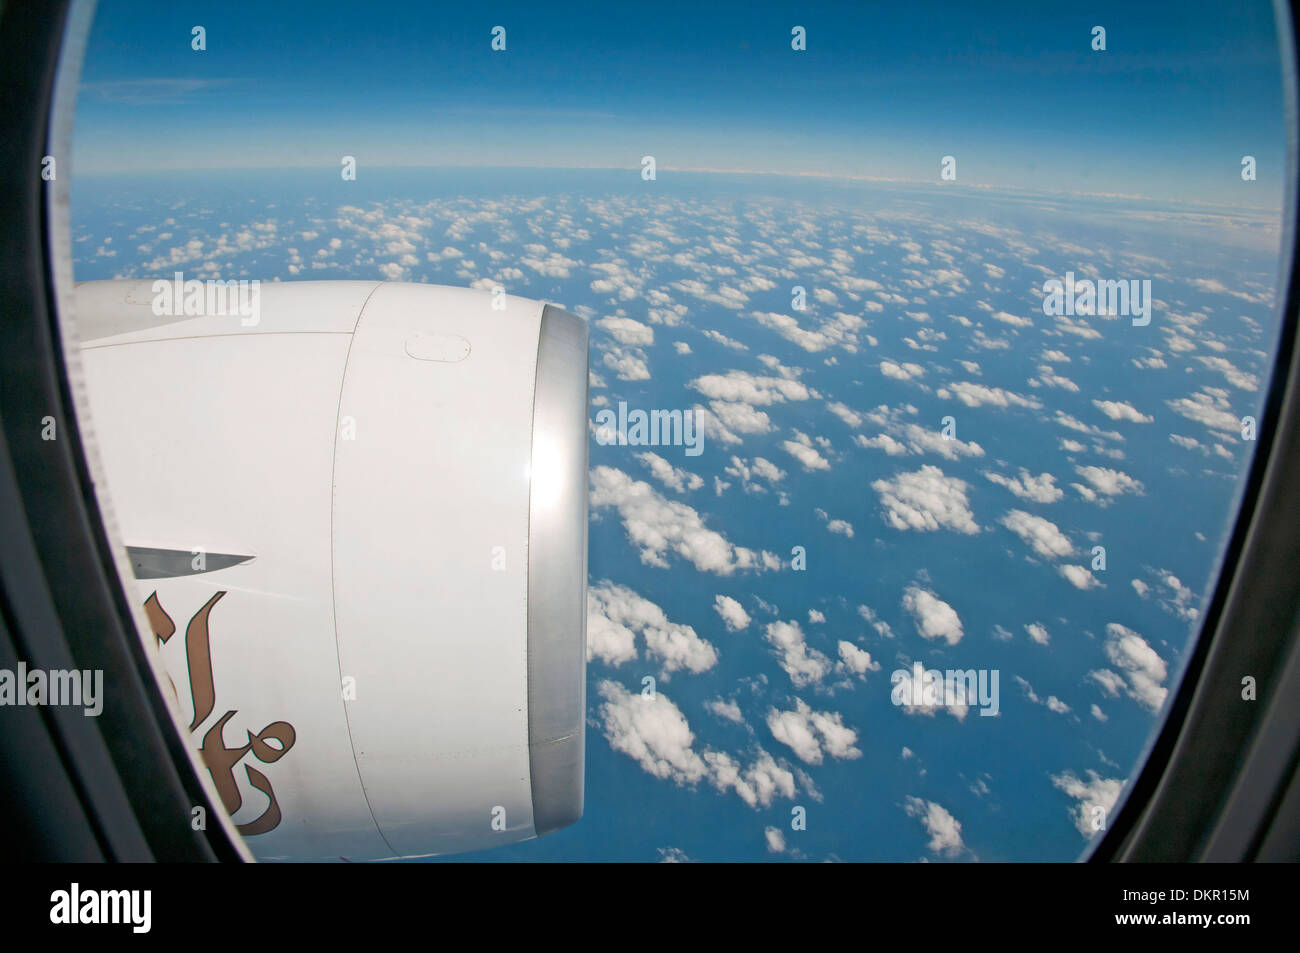 Cercare sintesi dettaglio emirato fly volo volo traffico aereo aereo aereo finestra logo sky foto aerea antenna marca di aviazione Foto Stock